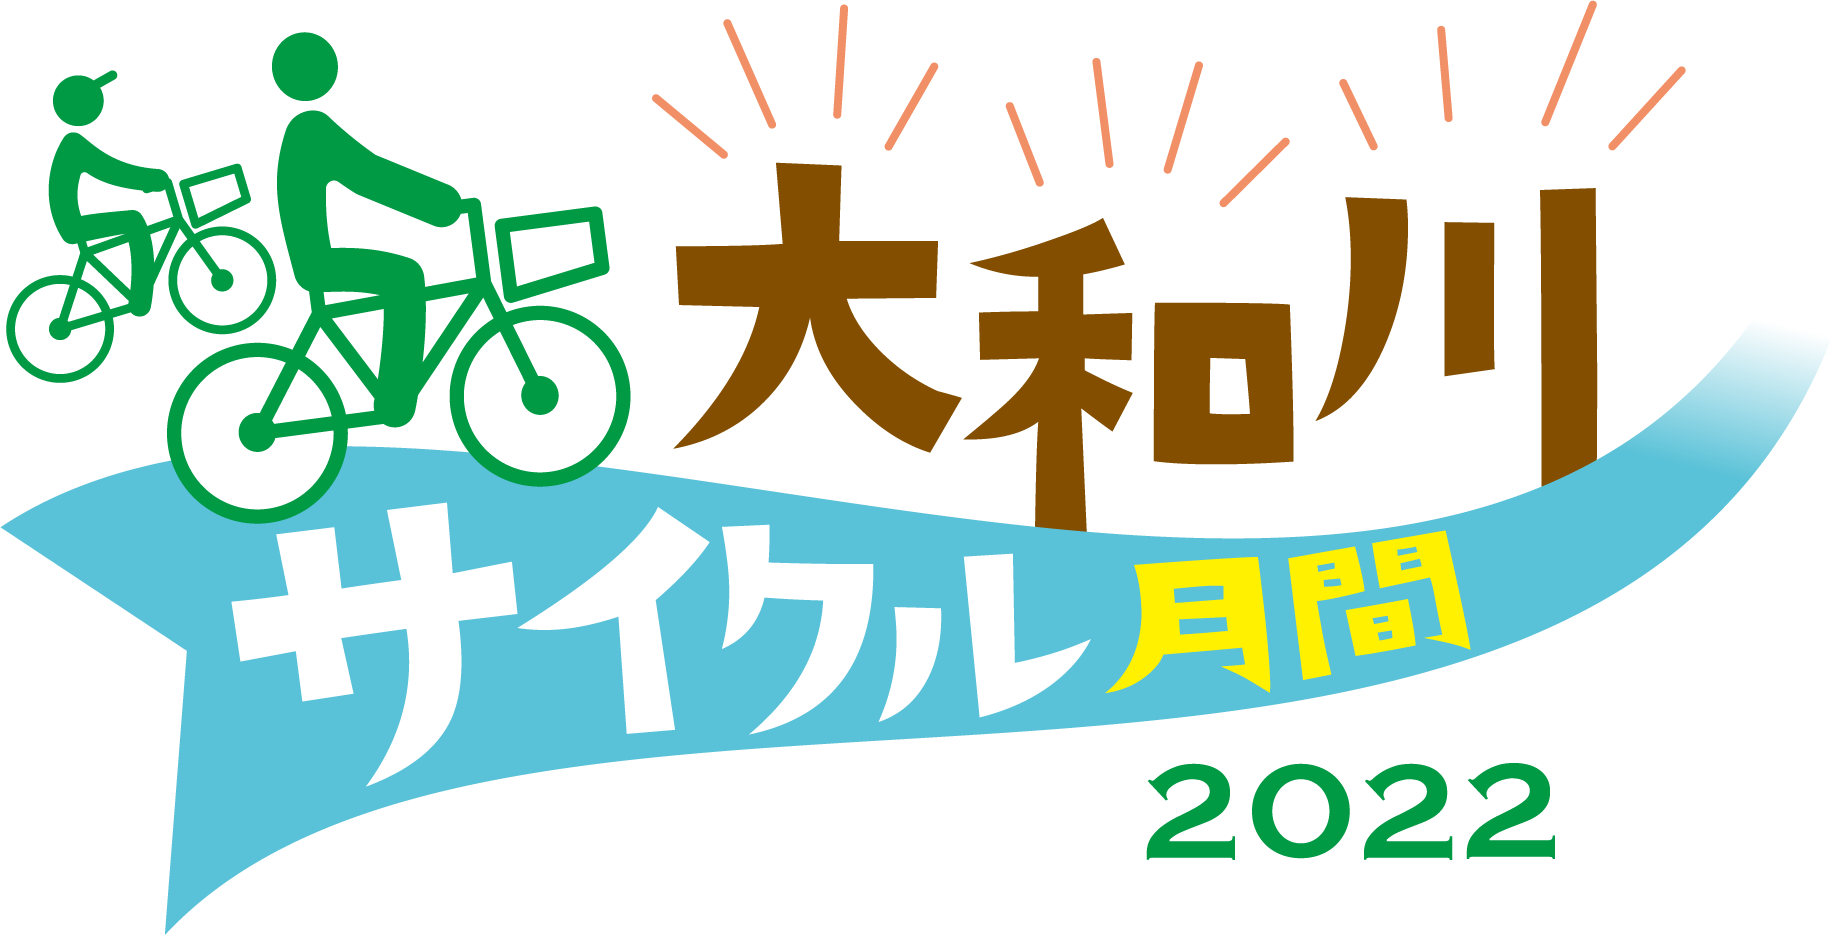 大和川サイクル月間2022 | 参加者募集！ | 実施期間:2022年10月23日から2022年11月30日まで